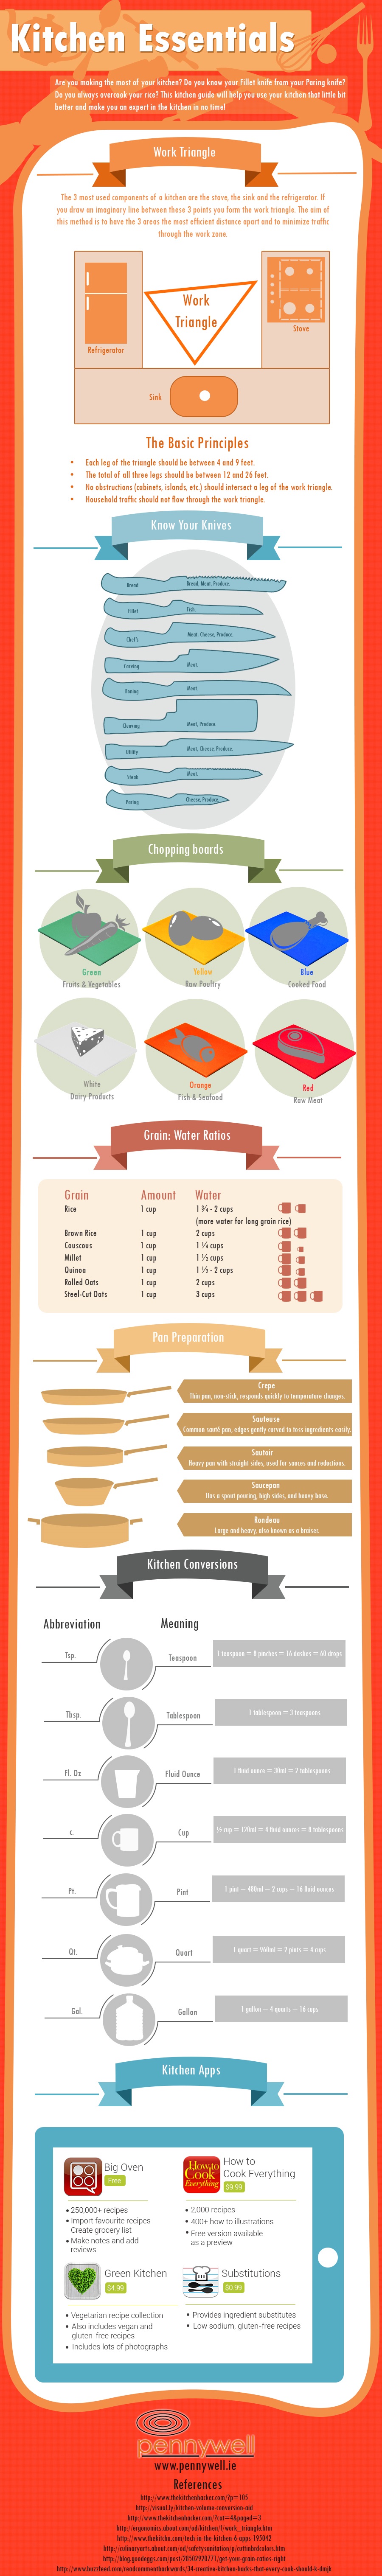 Kitchen Essentials: Know Your Kitchen